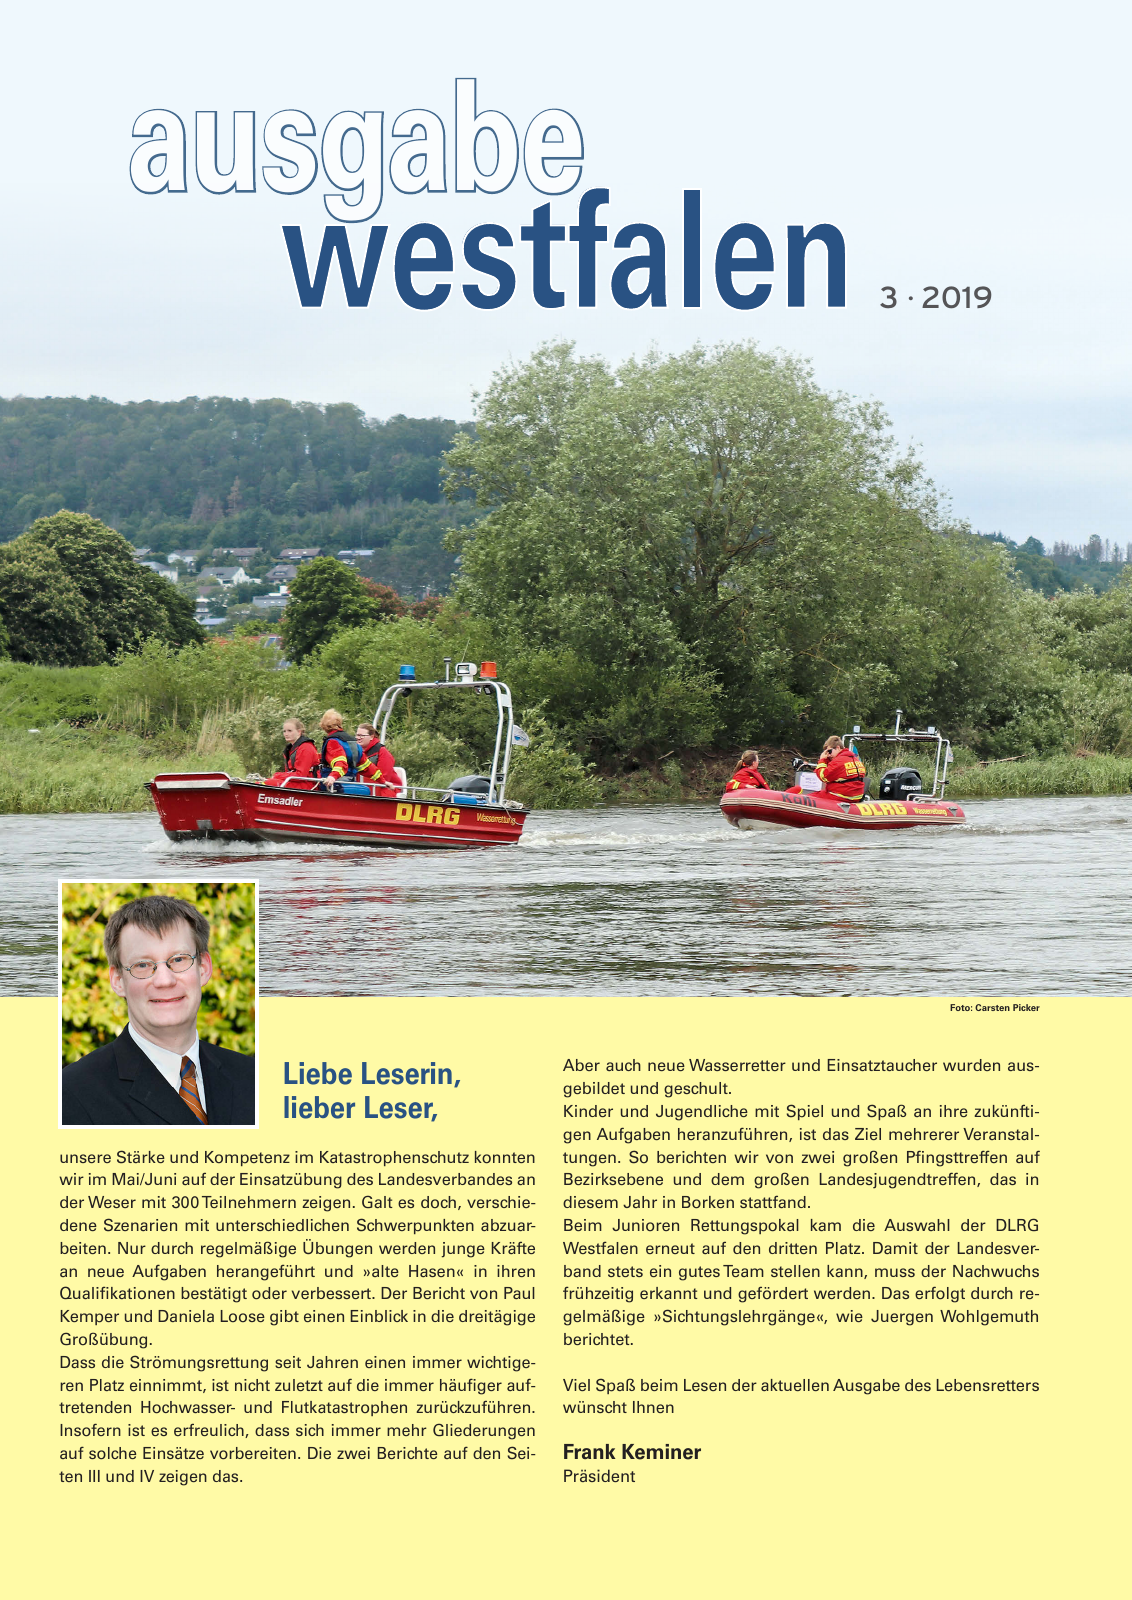 Vorschau Lebensretter 3/2019 - Westfalen Regionalausgabe Seite 3